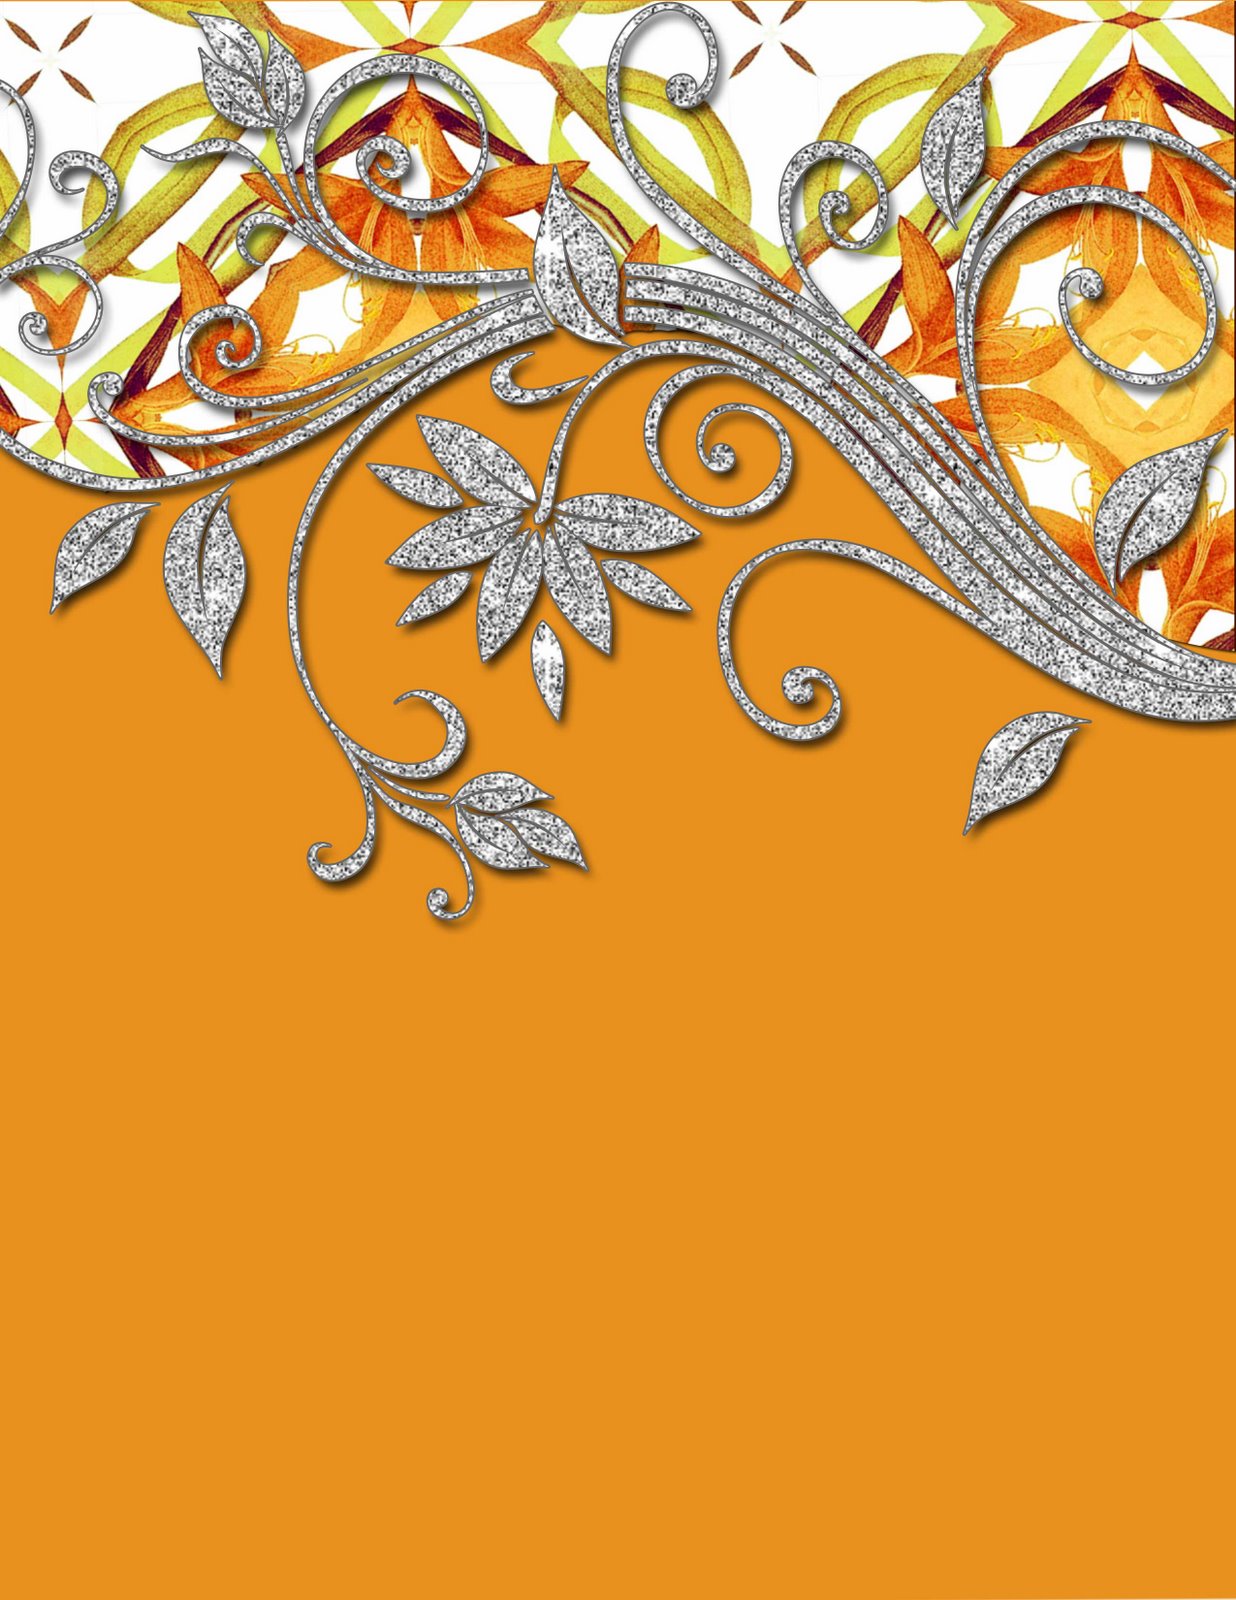 [orange-kaleidoscope.jpg]